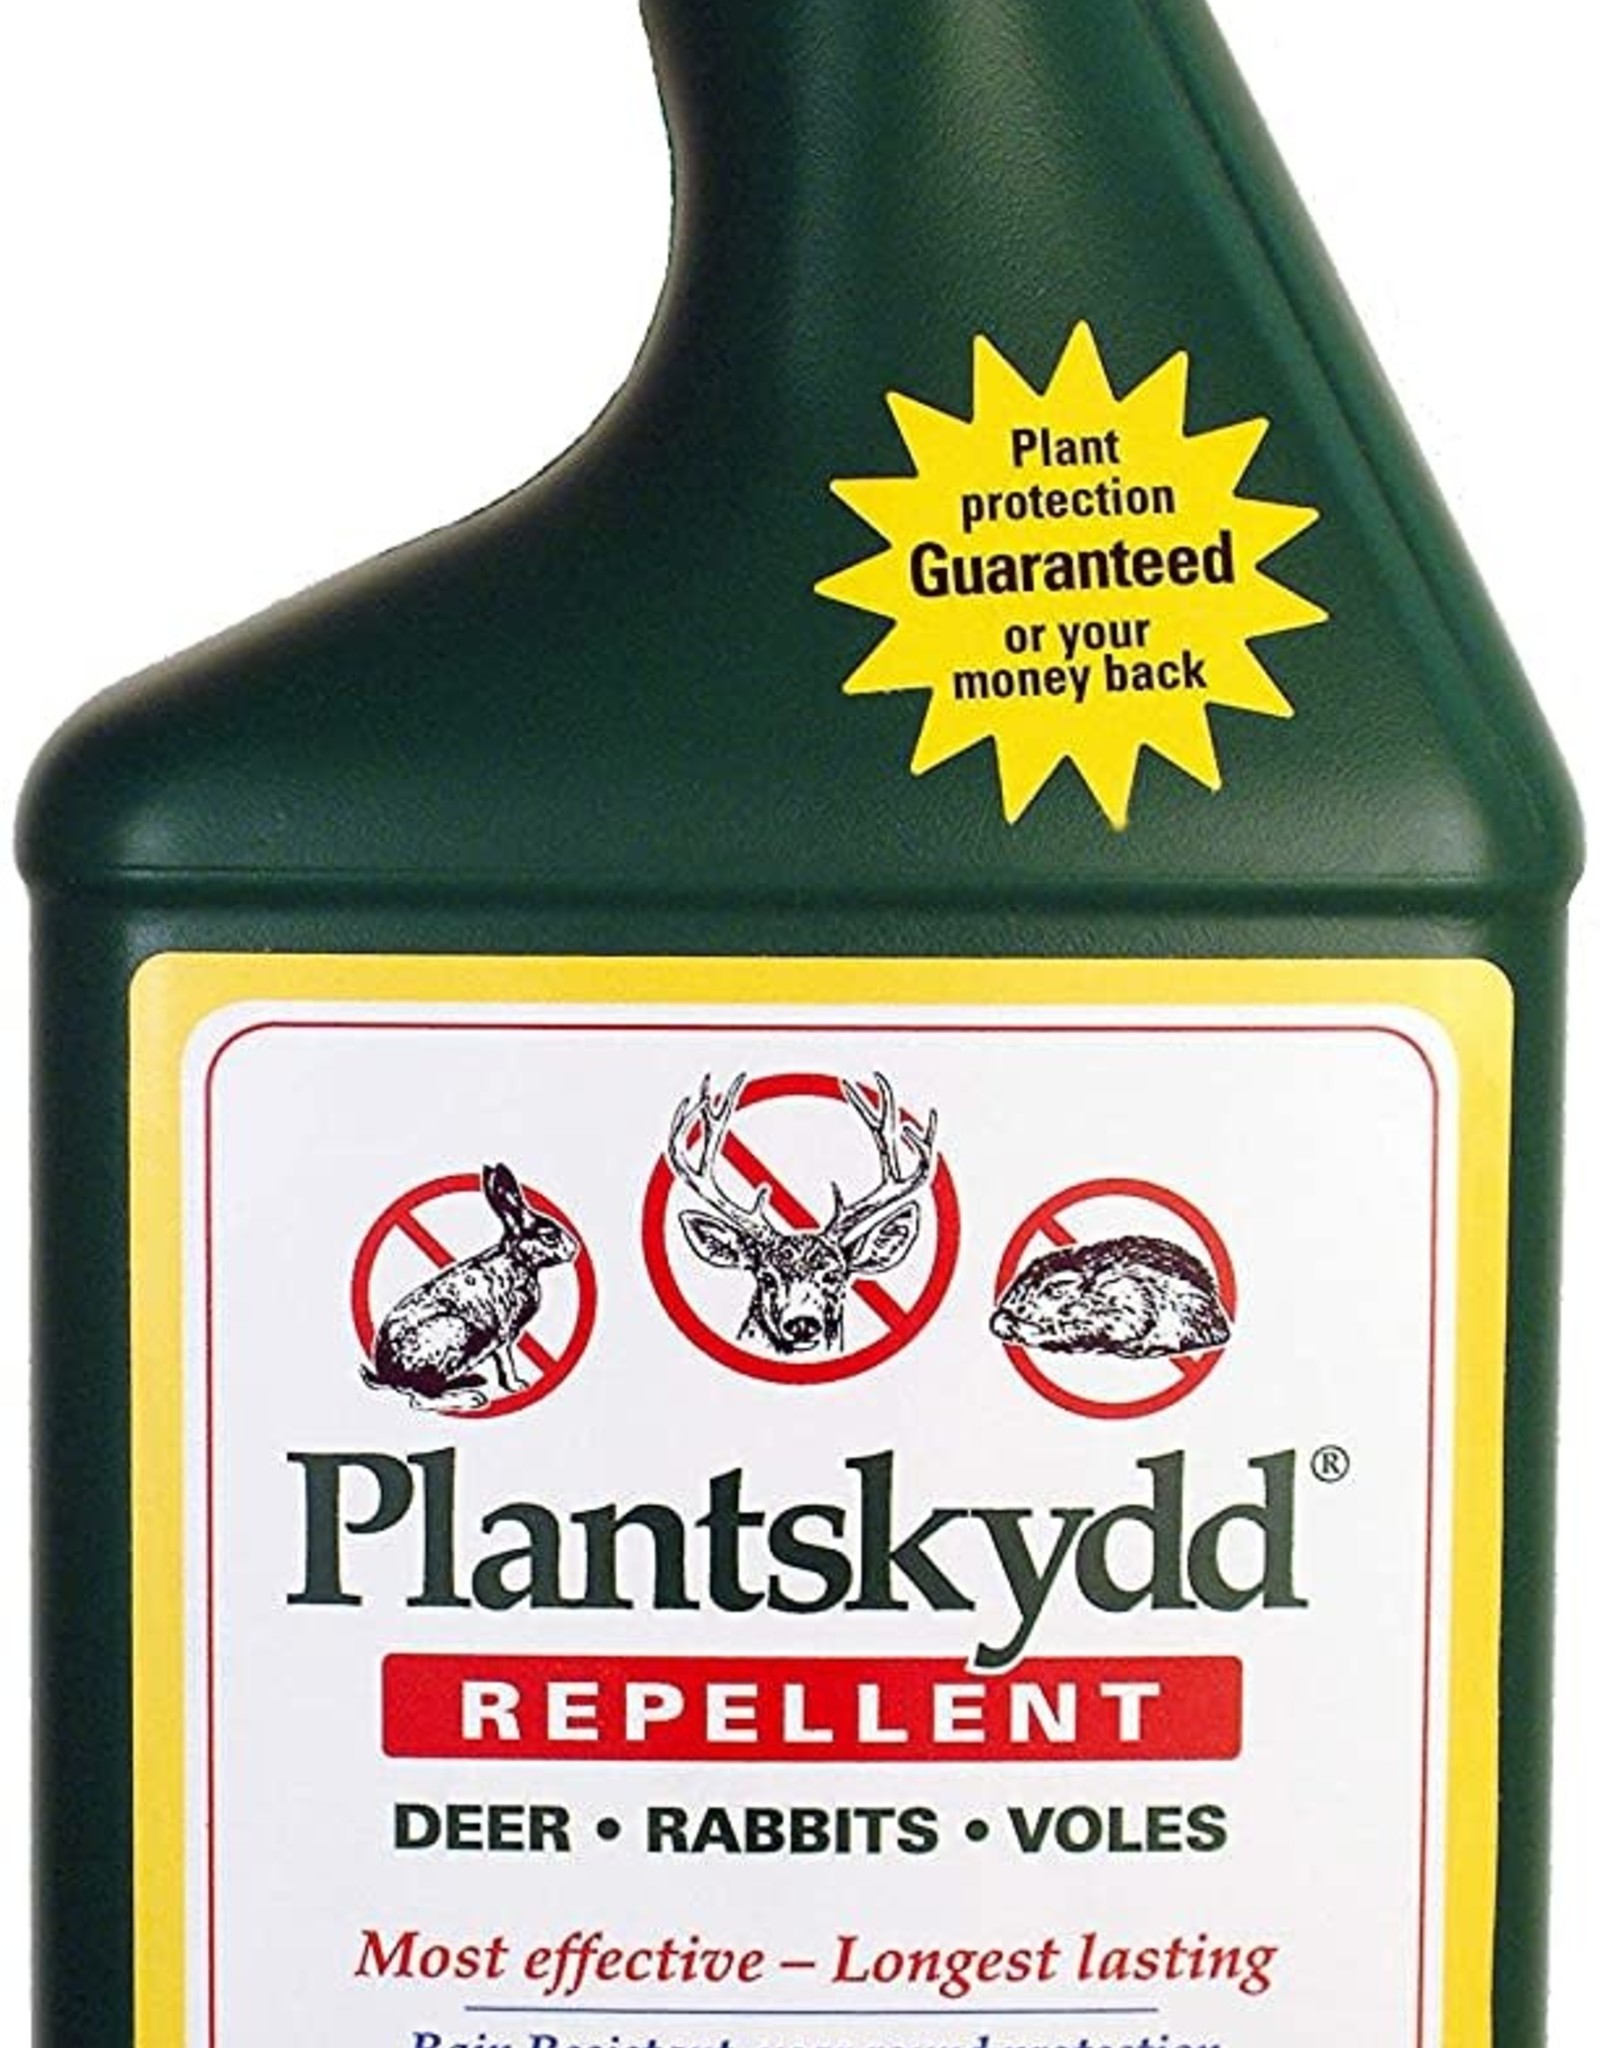 Plantskydd repellent 1 liter